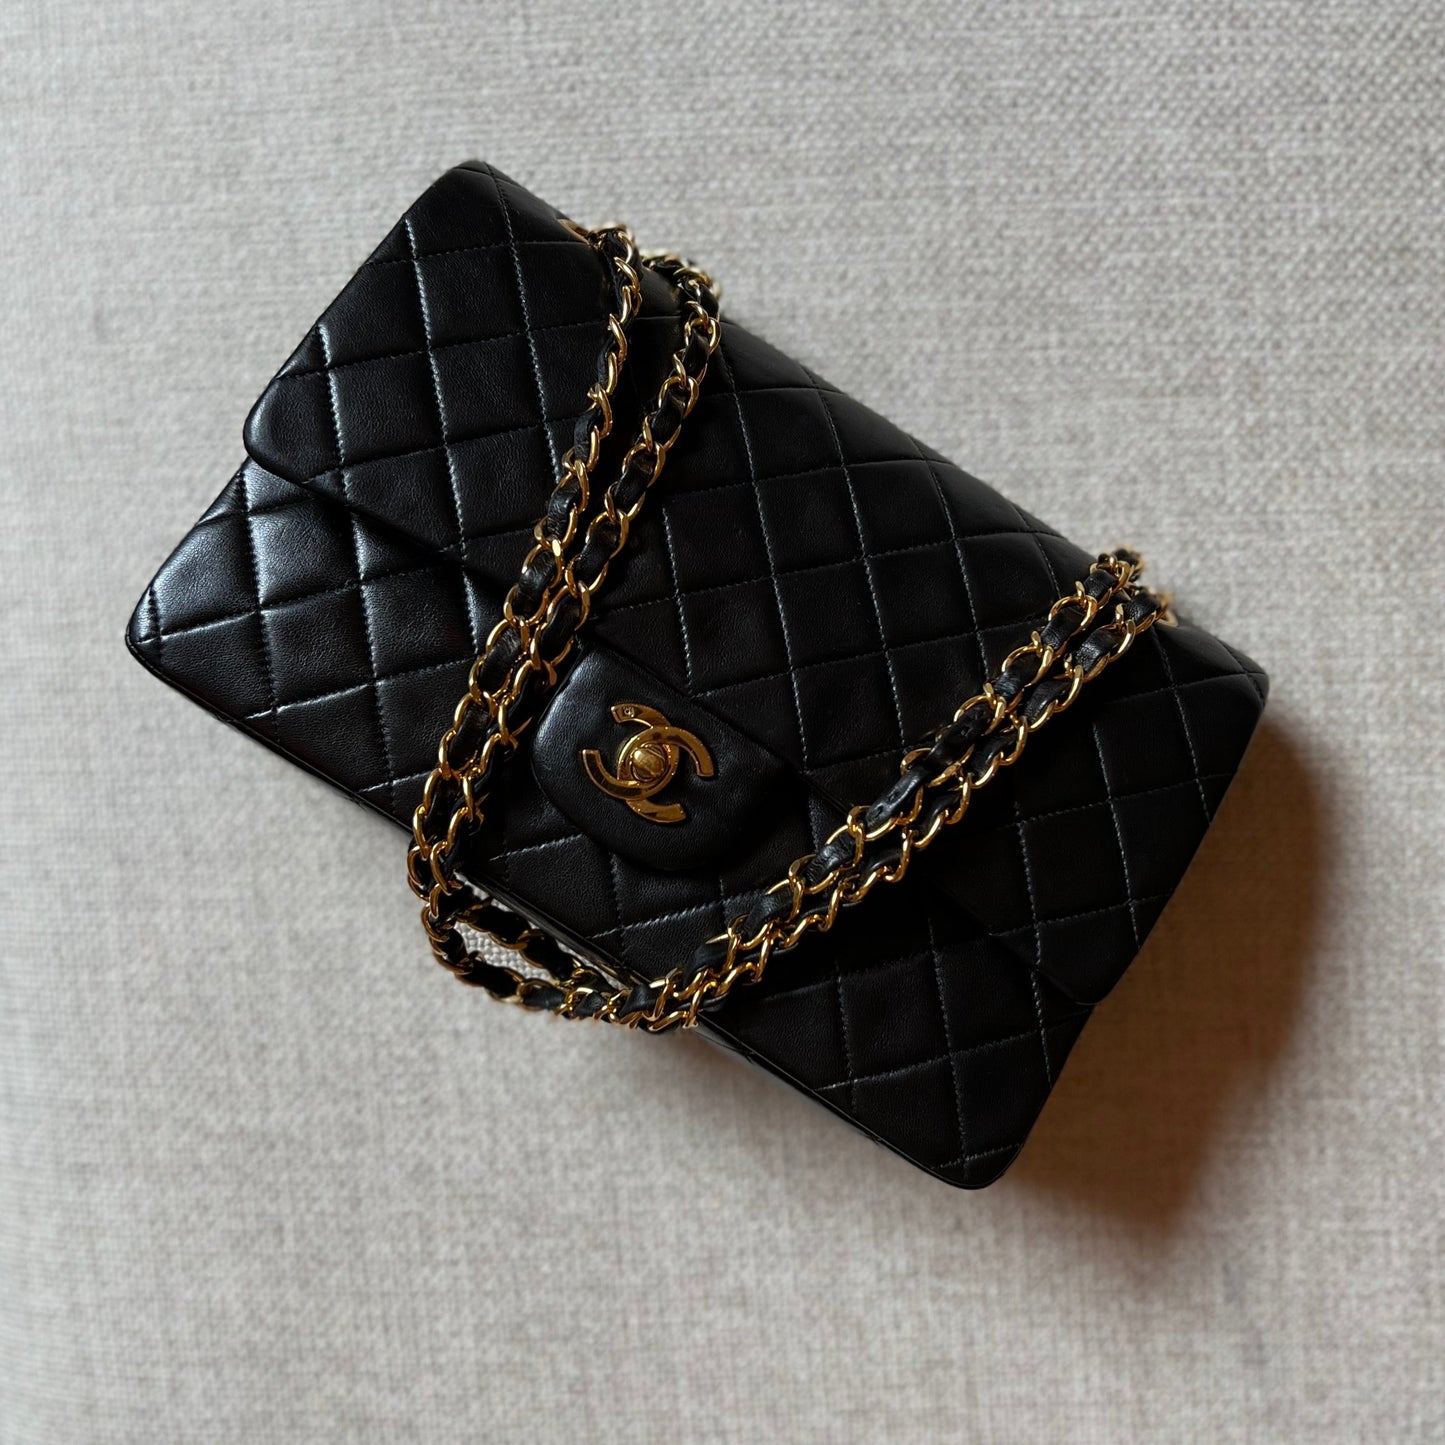 Vintage Chanel Classic Double Flap Bag in Black 19861988  singulié